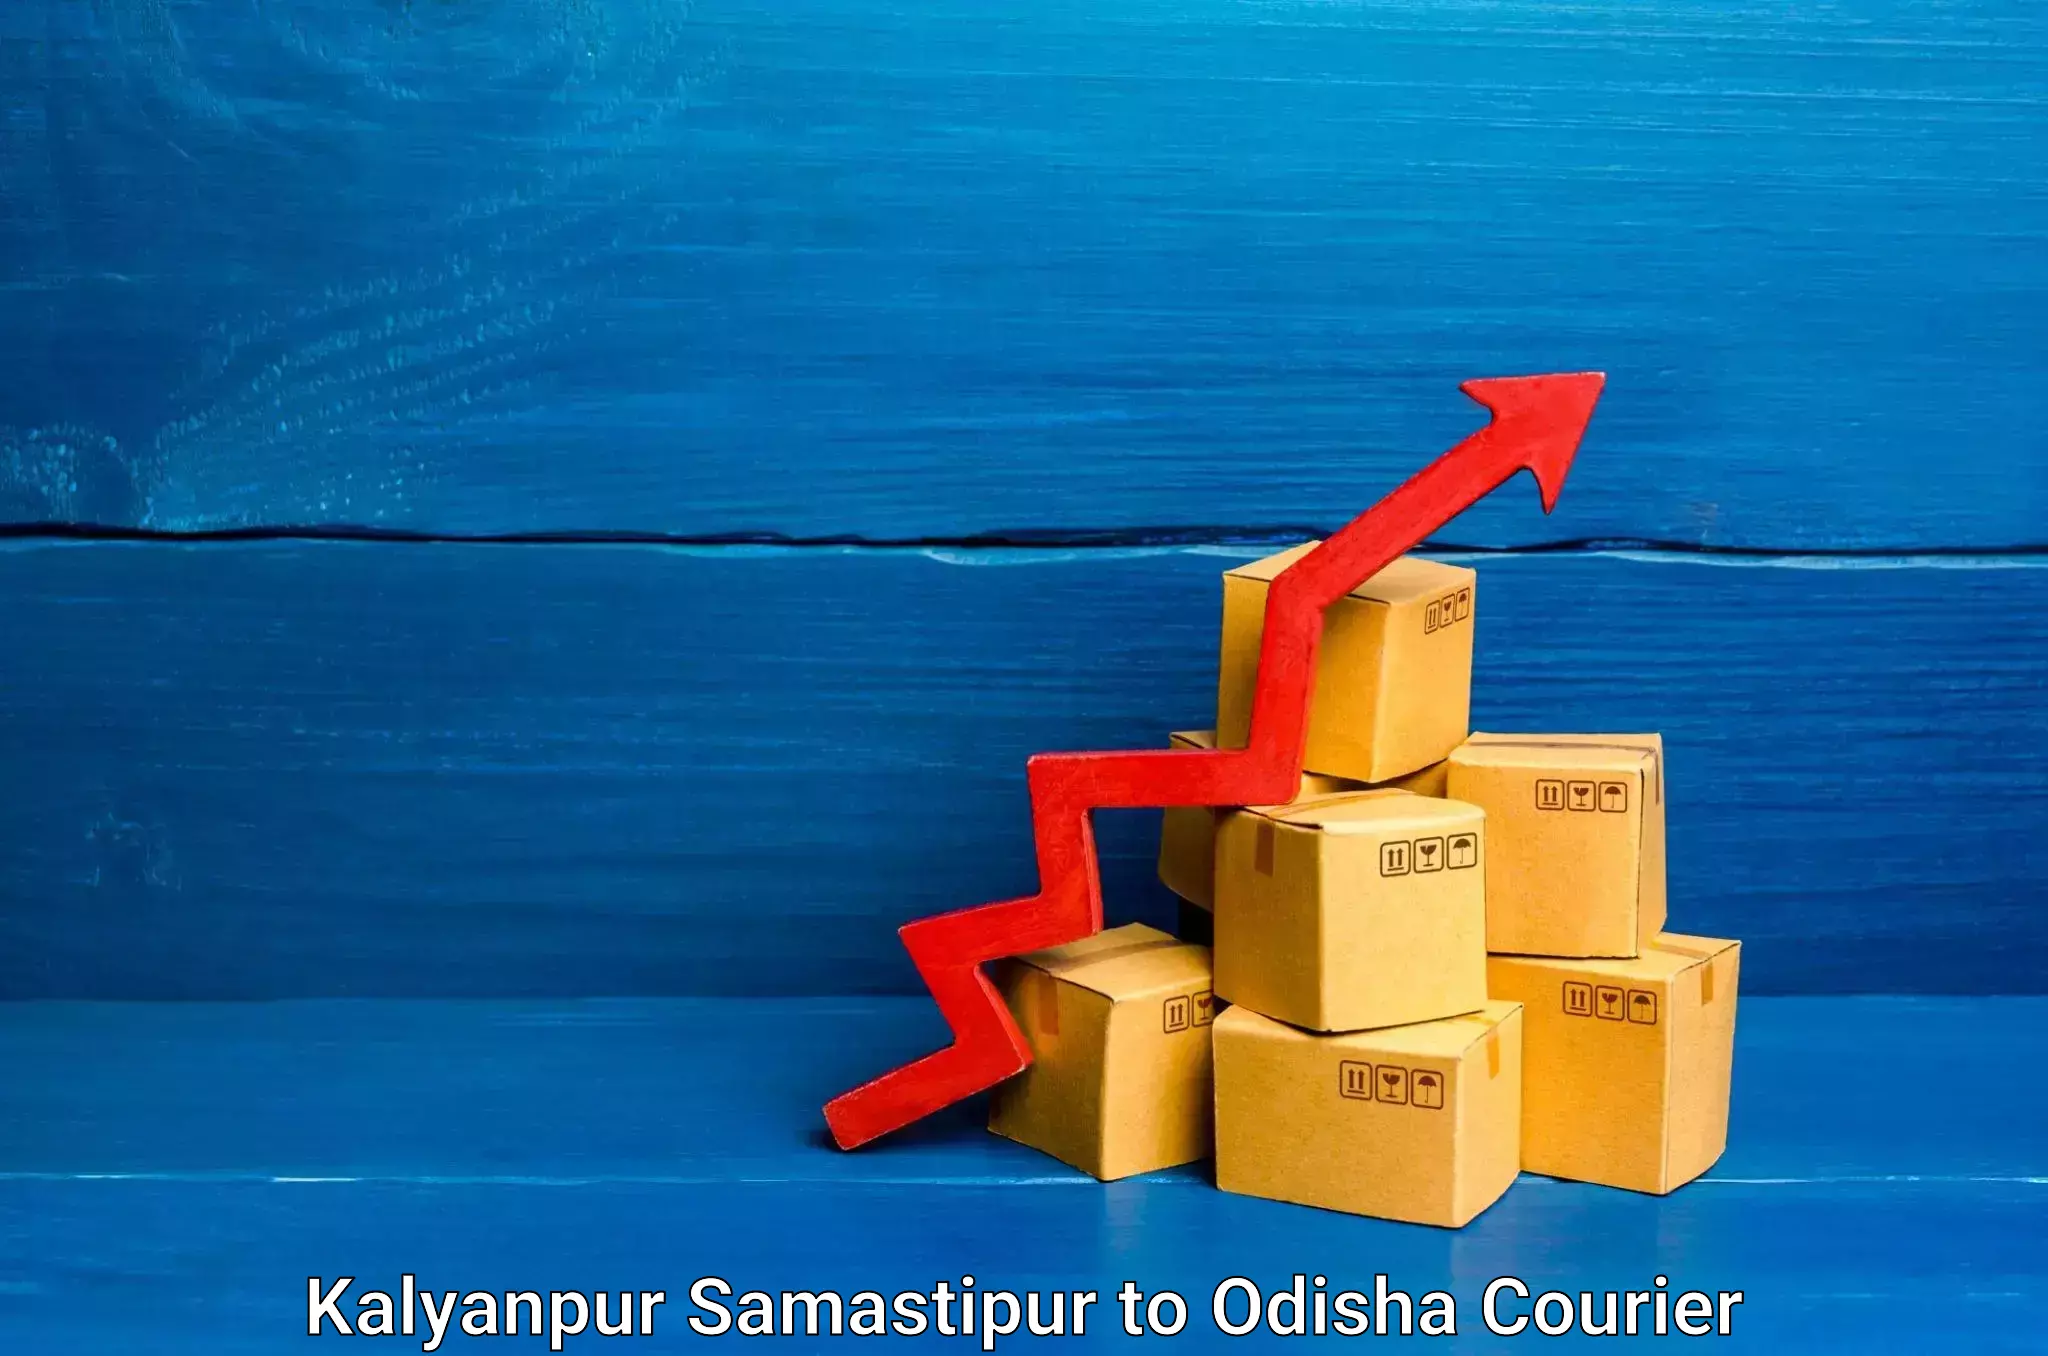 Furniture transport solutions Kalyanpur Samastipur to Agarpada